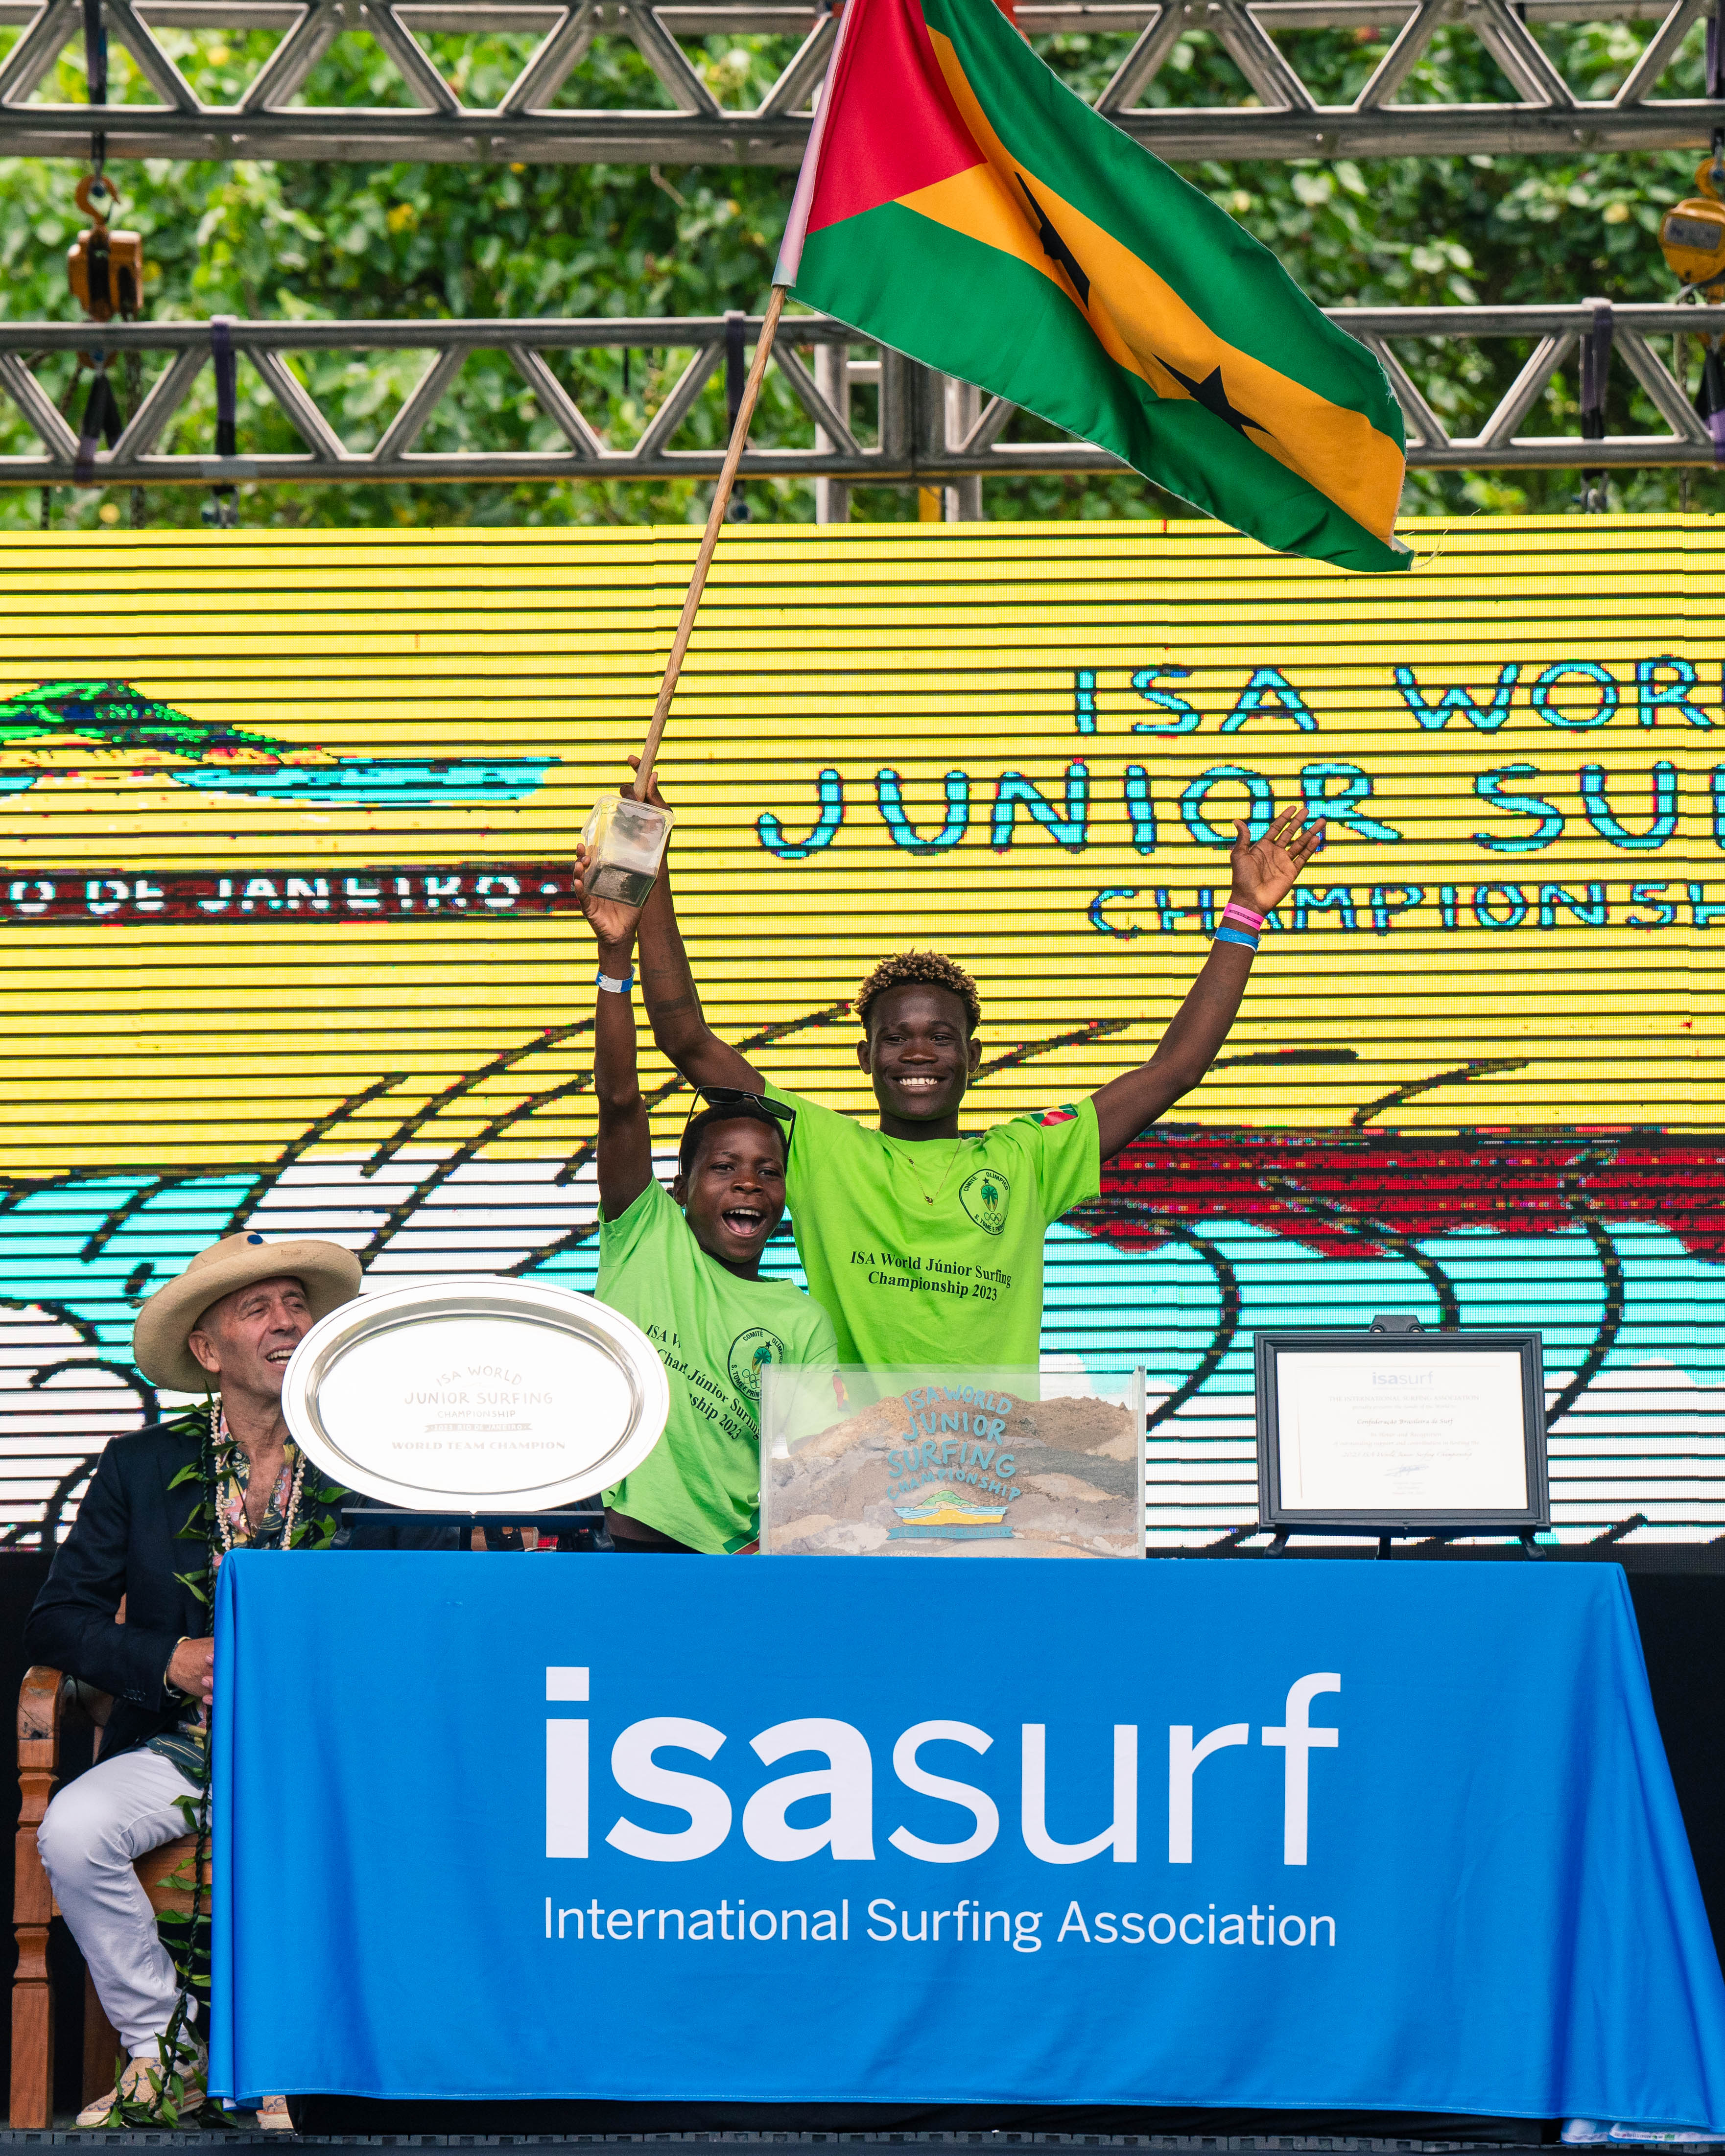 Equipe de São Tomé e Príncipe deposita a areia de sua região na caixa de acrílico que representa a união dos povos.